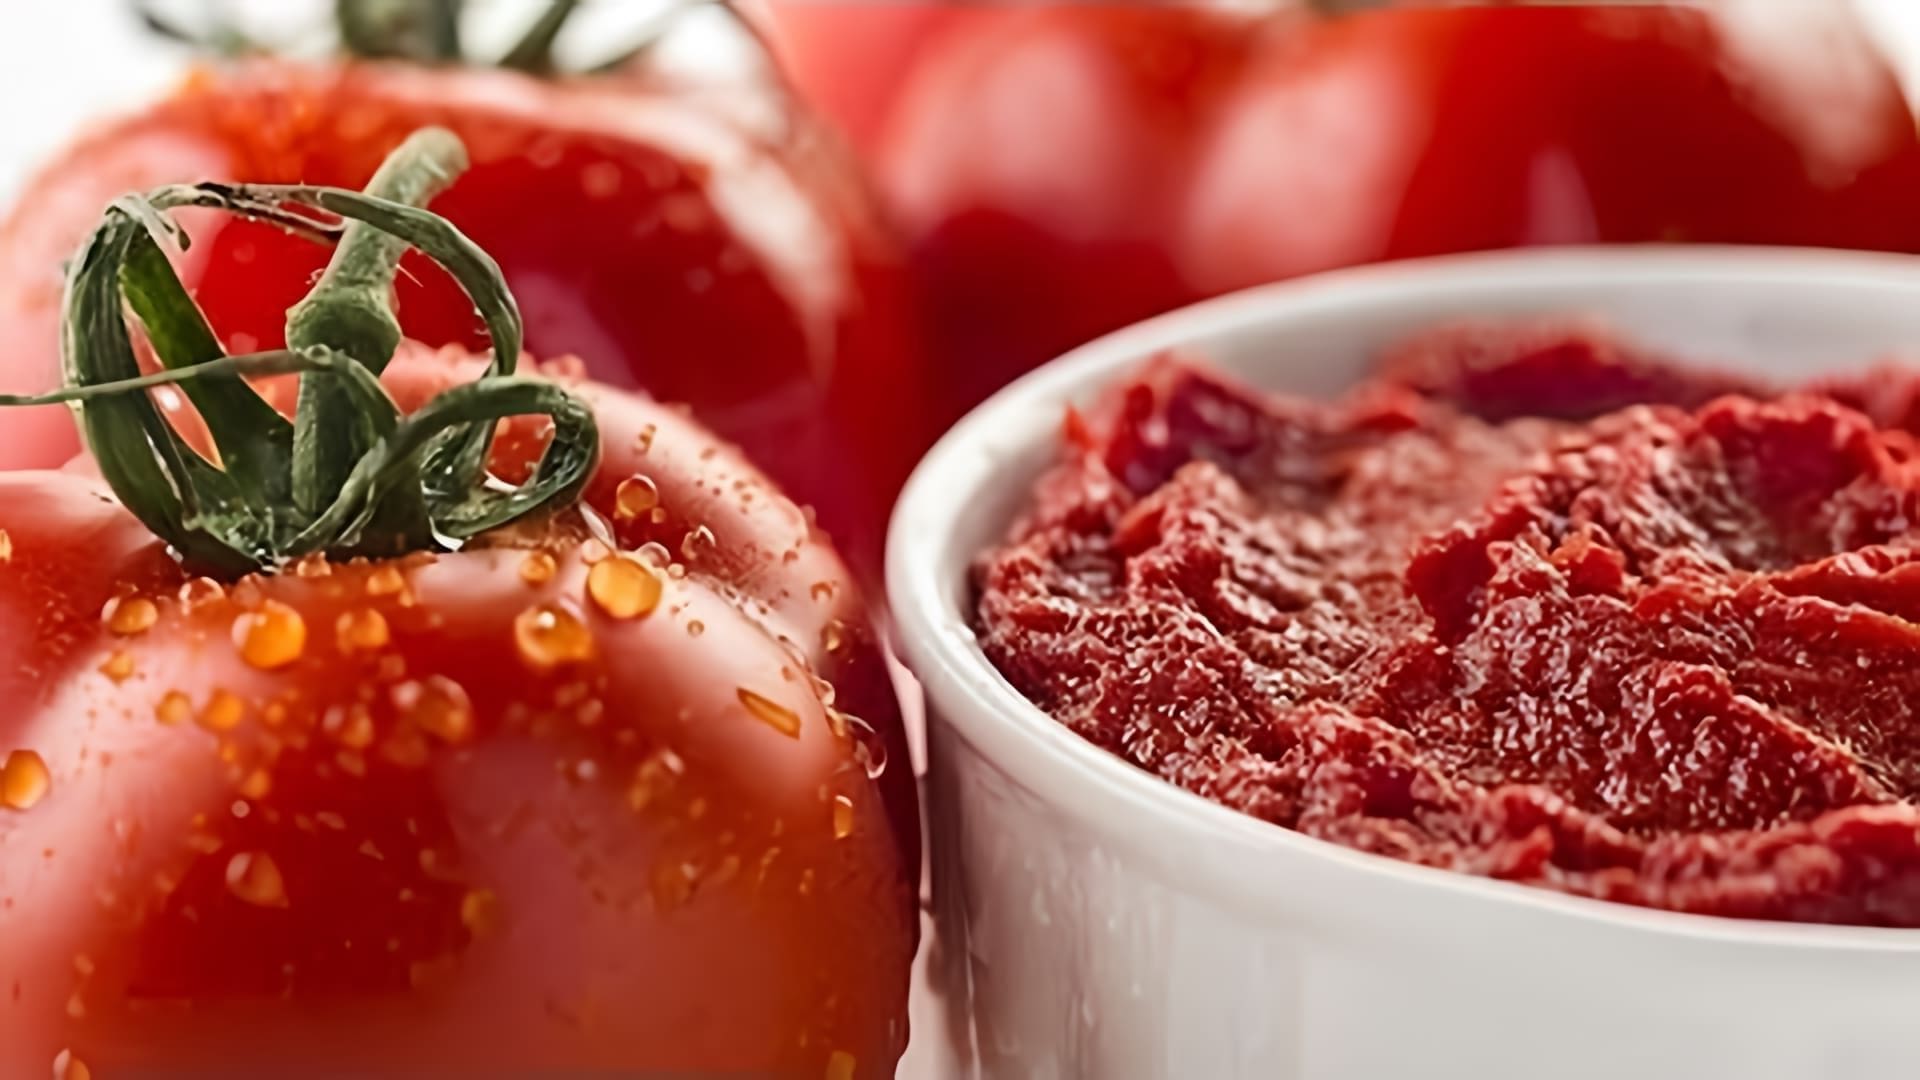 В этом видео демонстрируется процесс приготовления томатной пасты в домашних условиях